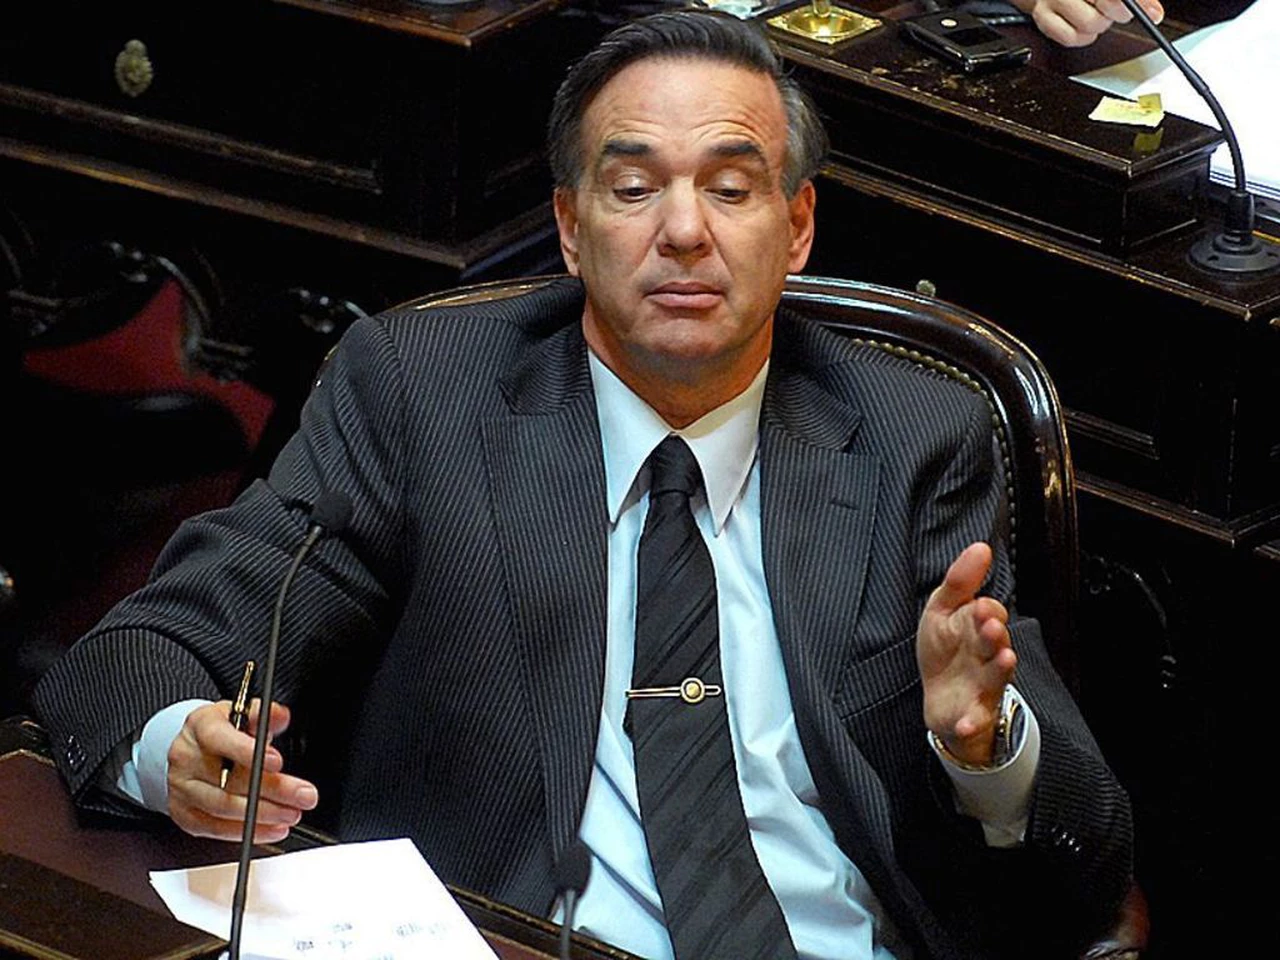 Pichetto y las razones para no votar la ley que recupera bienes de la corrupción: "No demonicemos"